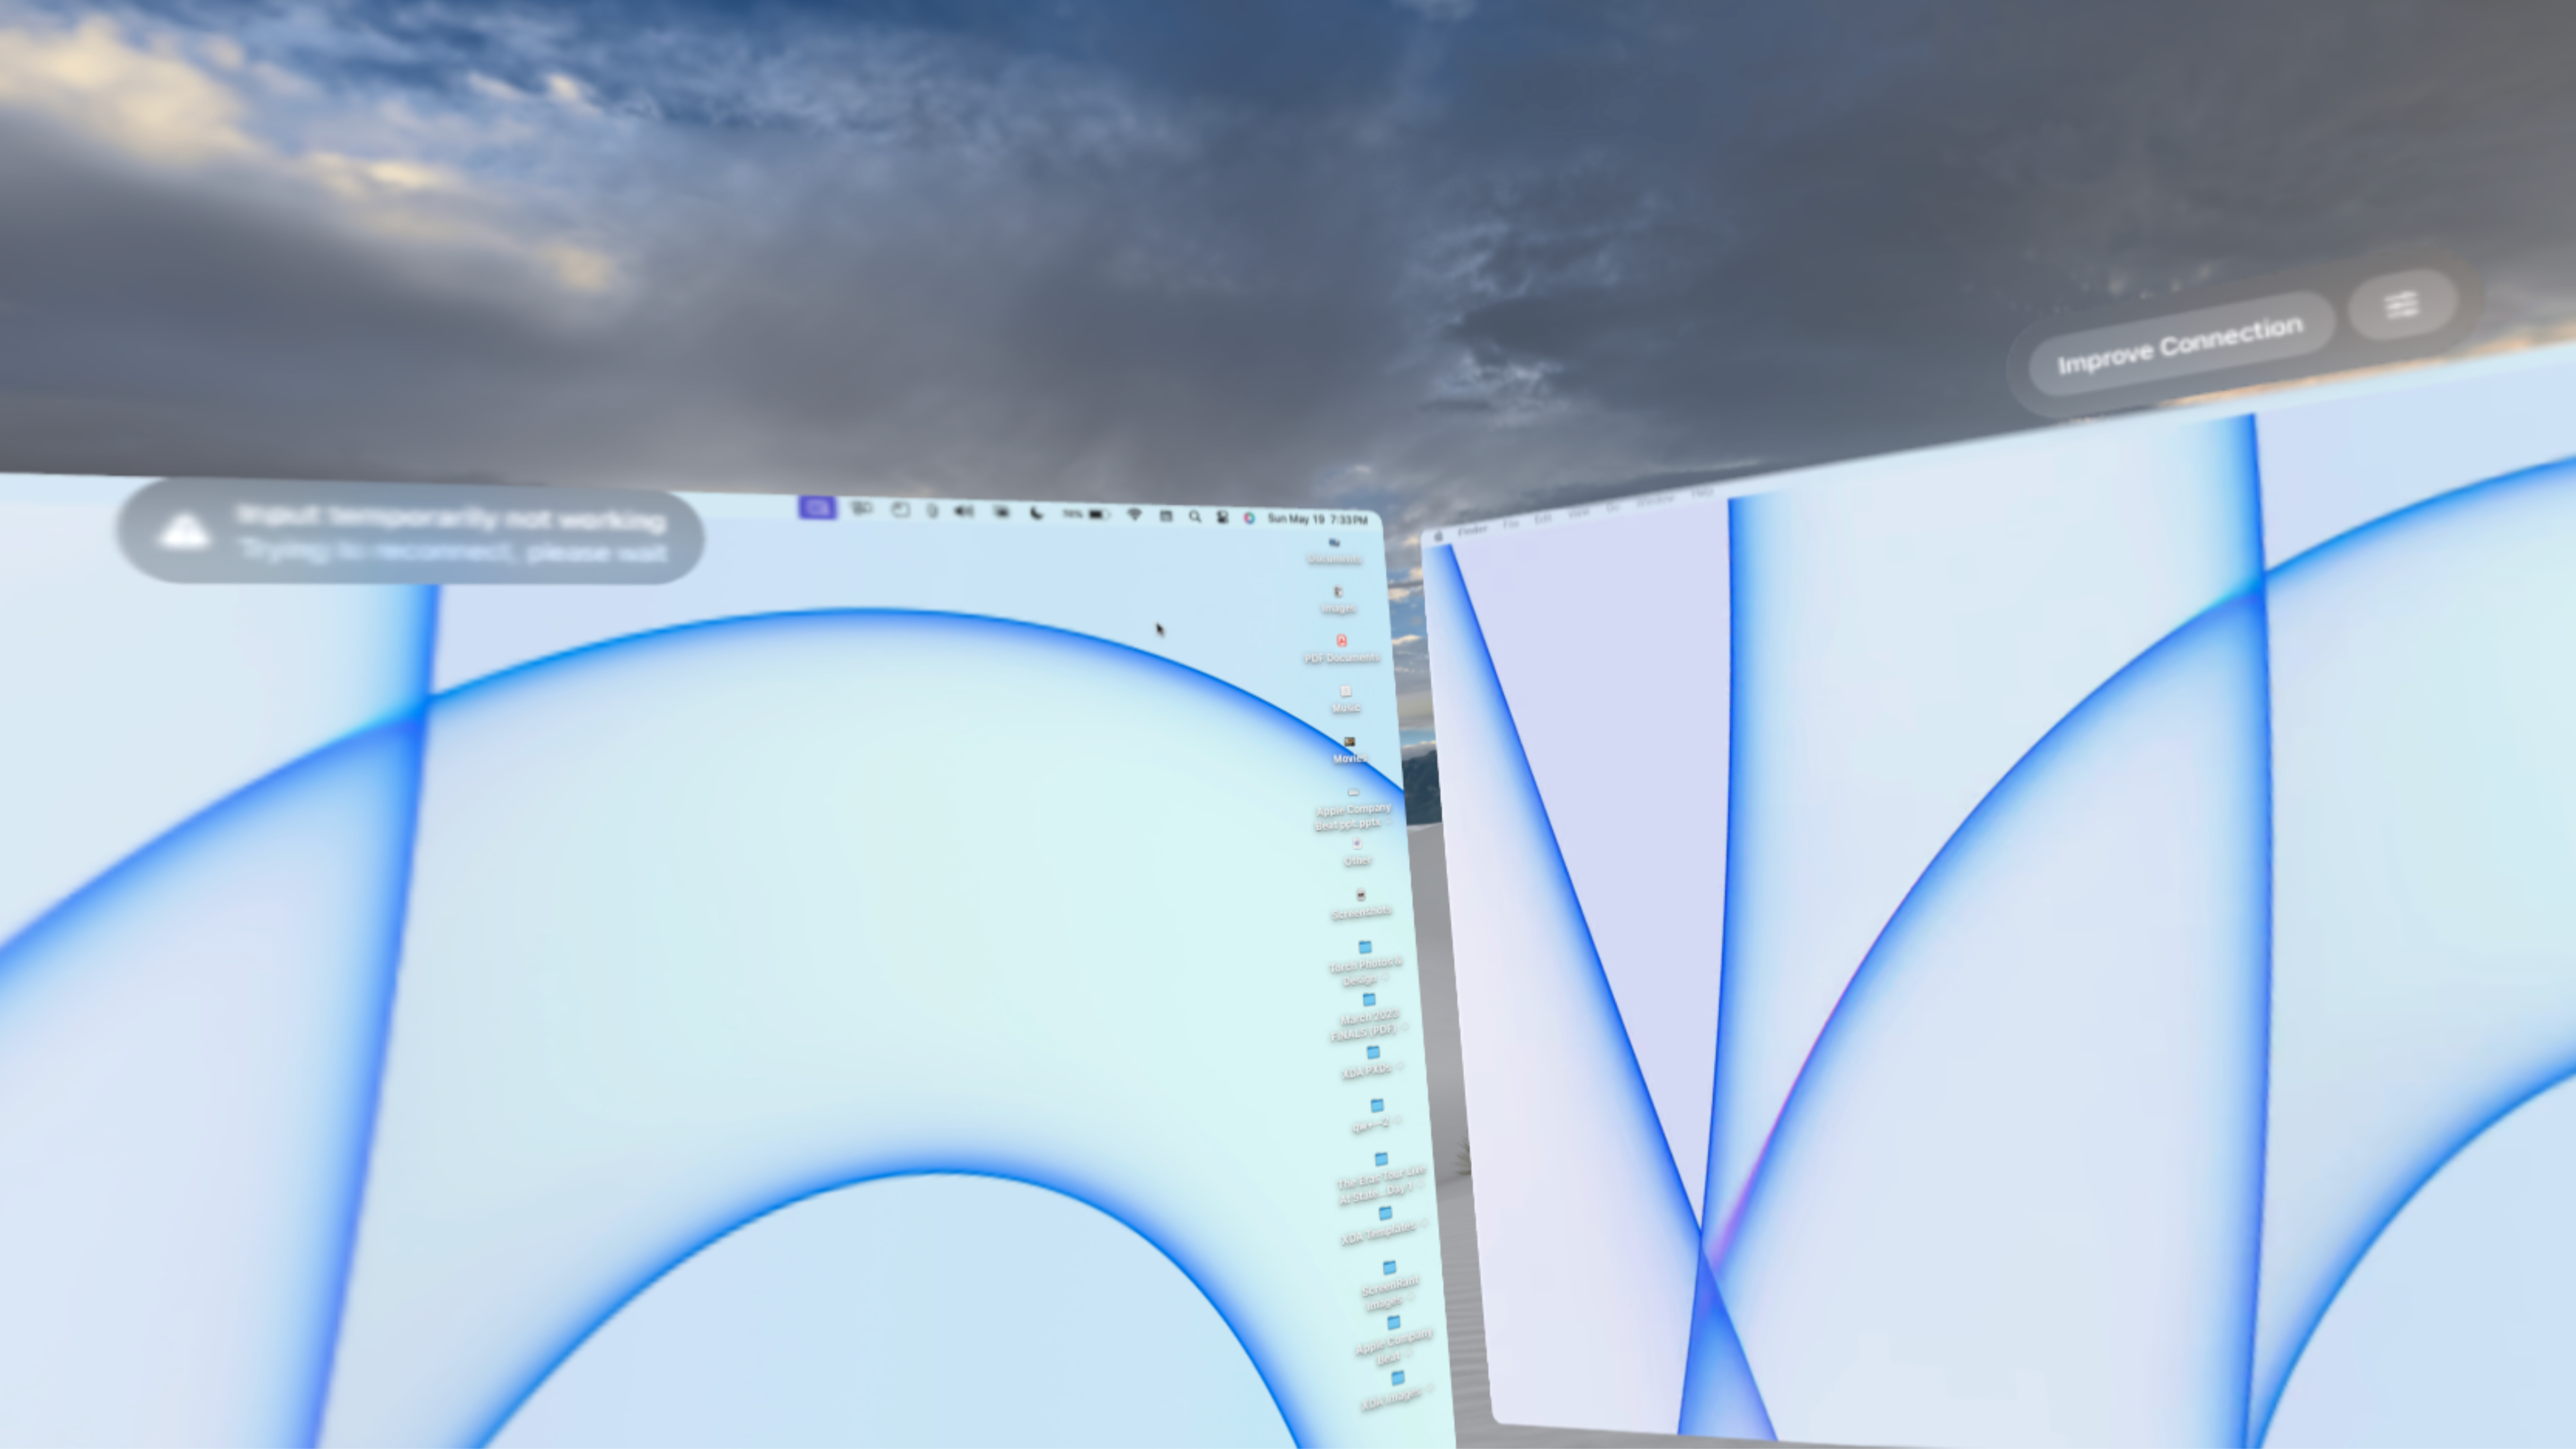 Two Mac Virtual Displays in visionOS.